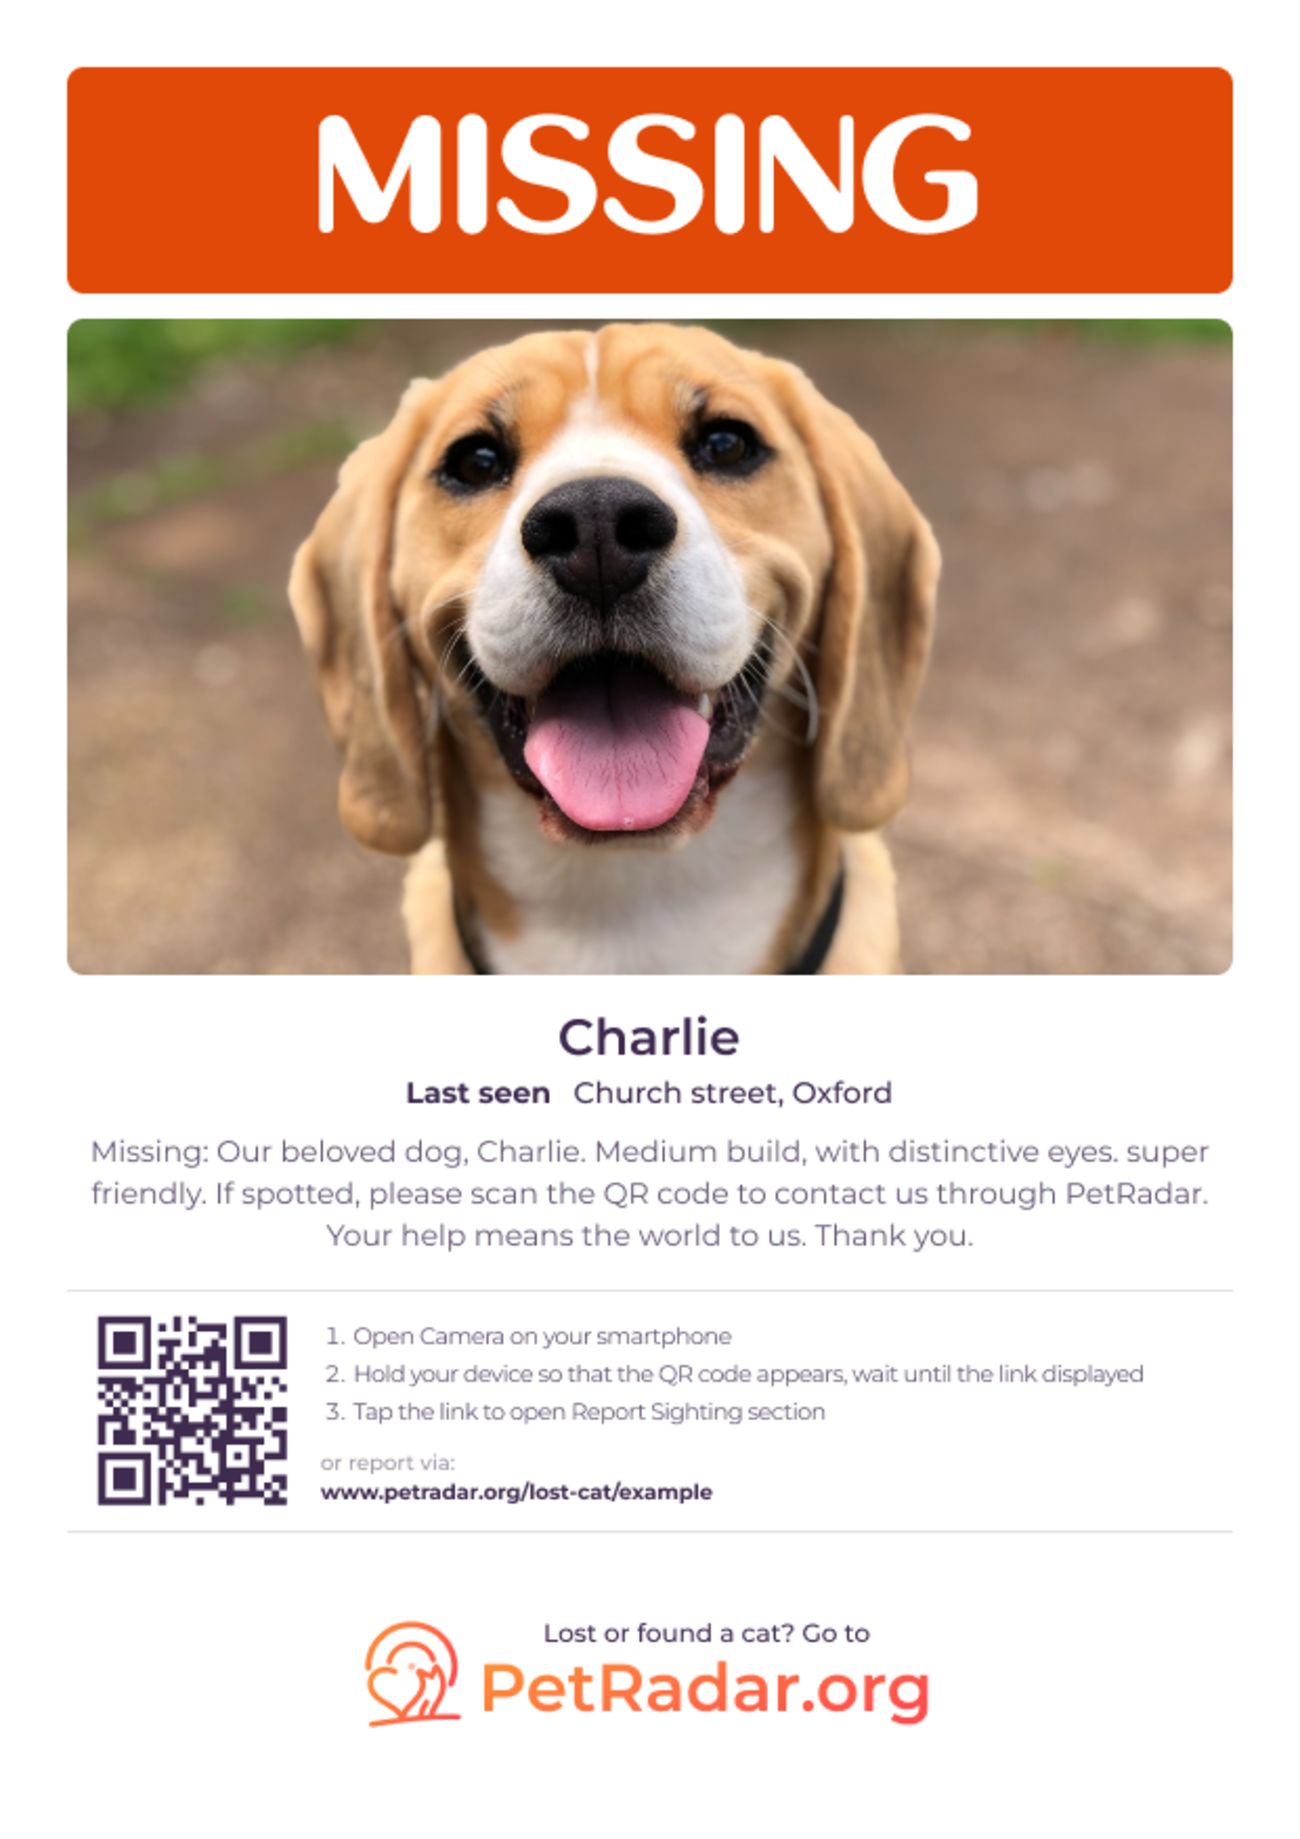 PetRadar's gratis downloadbare poster voor vermiste honden